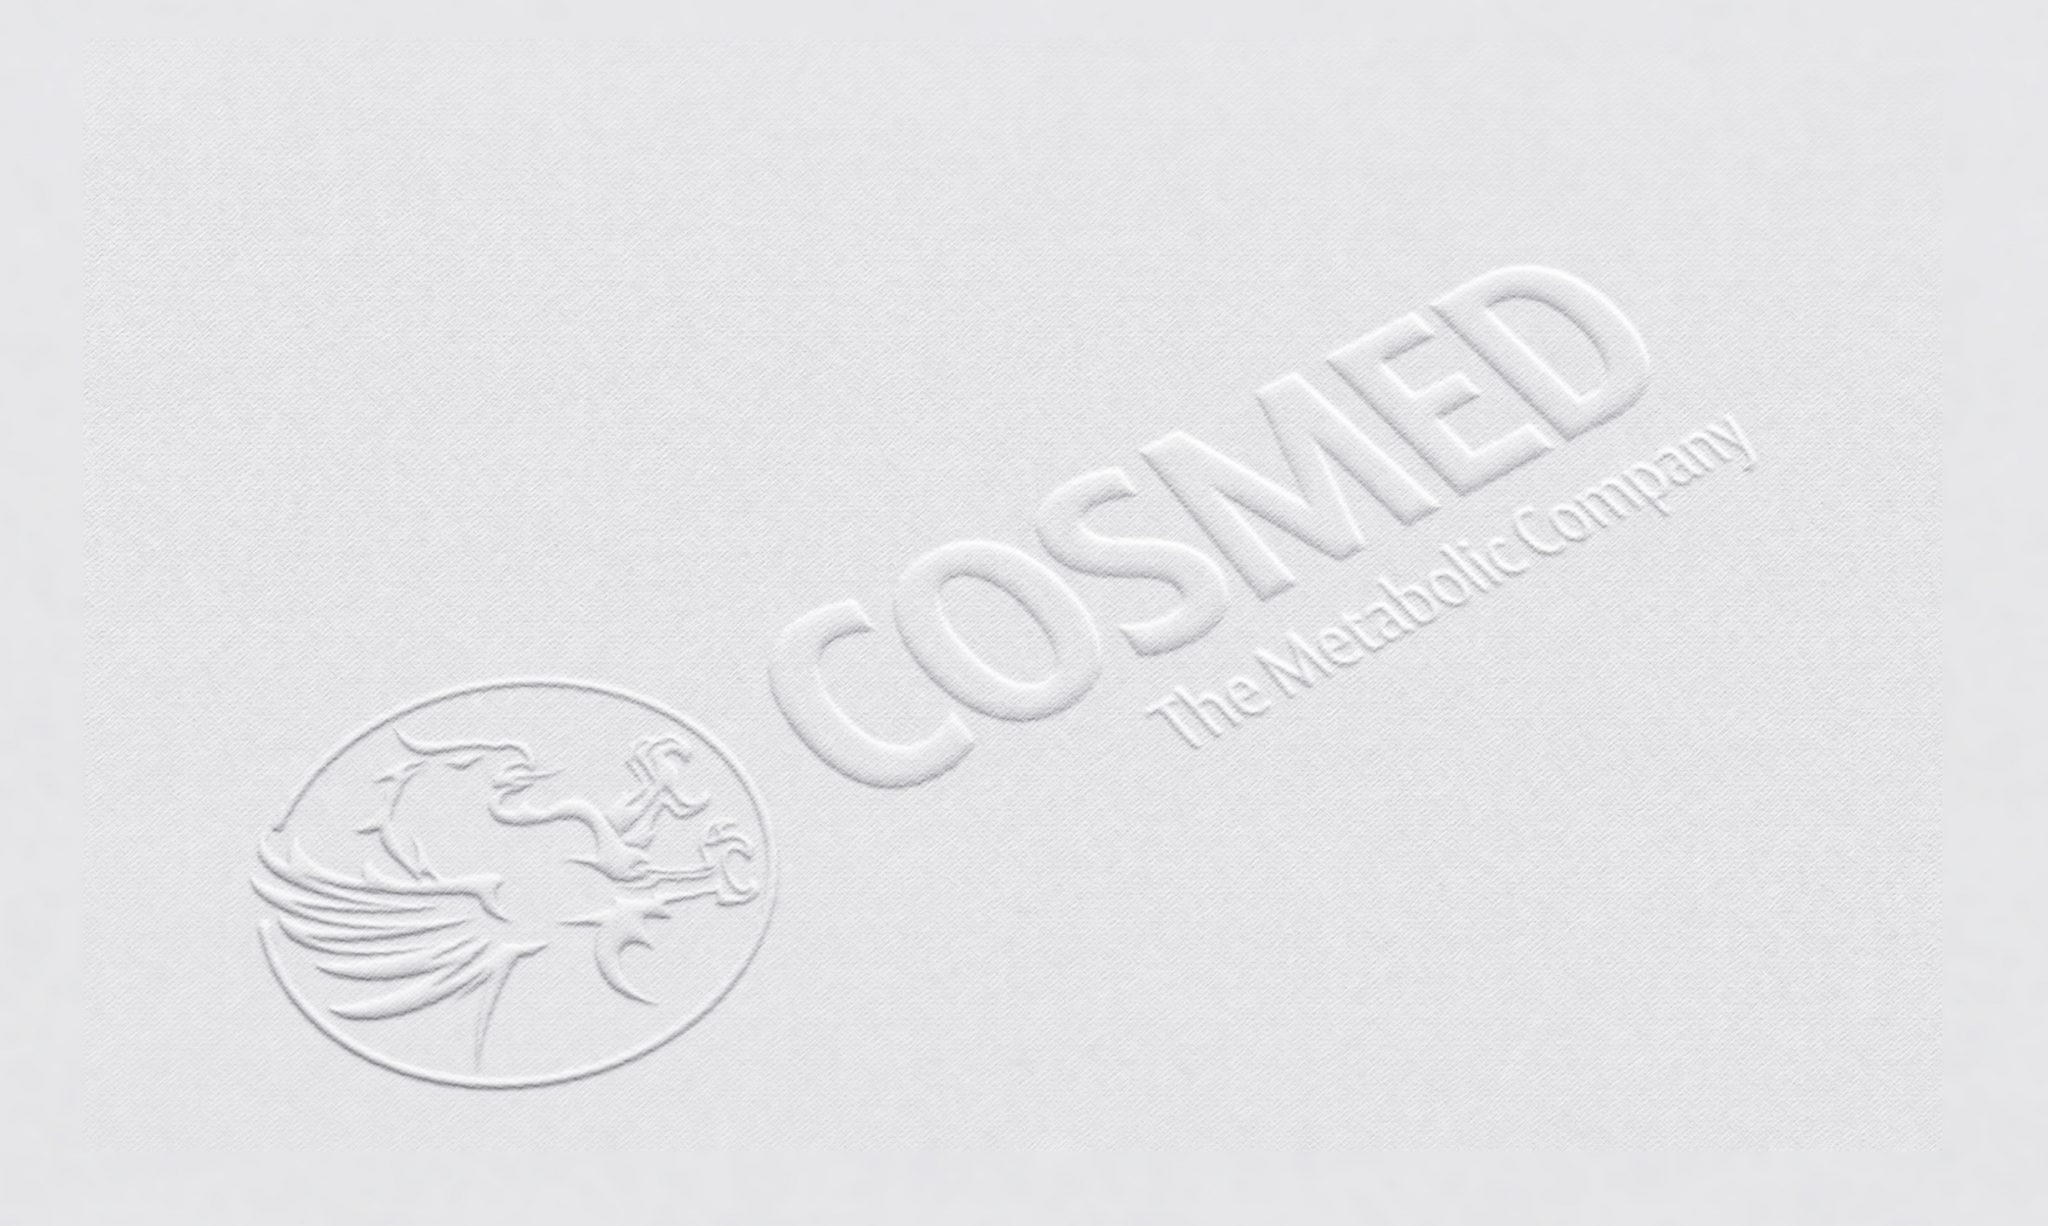 Cosmed Deutschland, Corporate Design, Letterpress Logo. Agentur Heldenstreich Würzburg